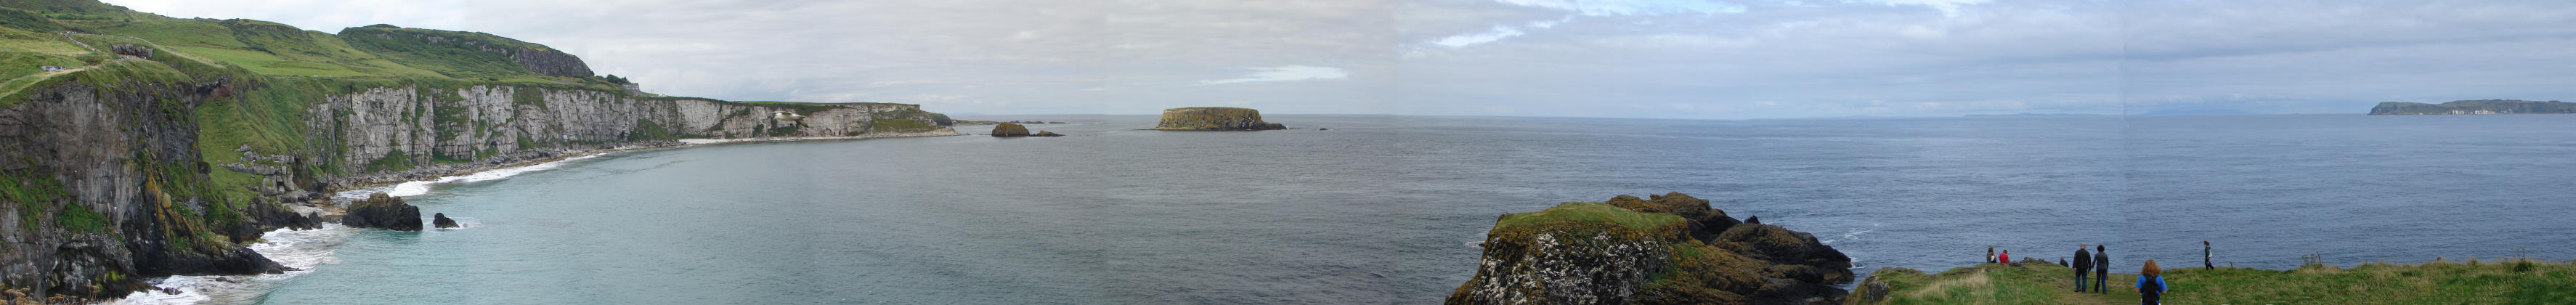 Blick von Carriackrade Island